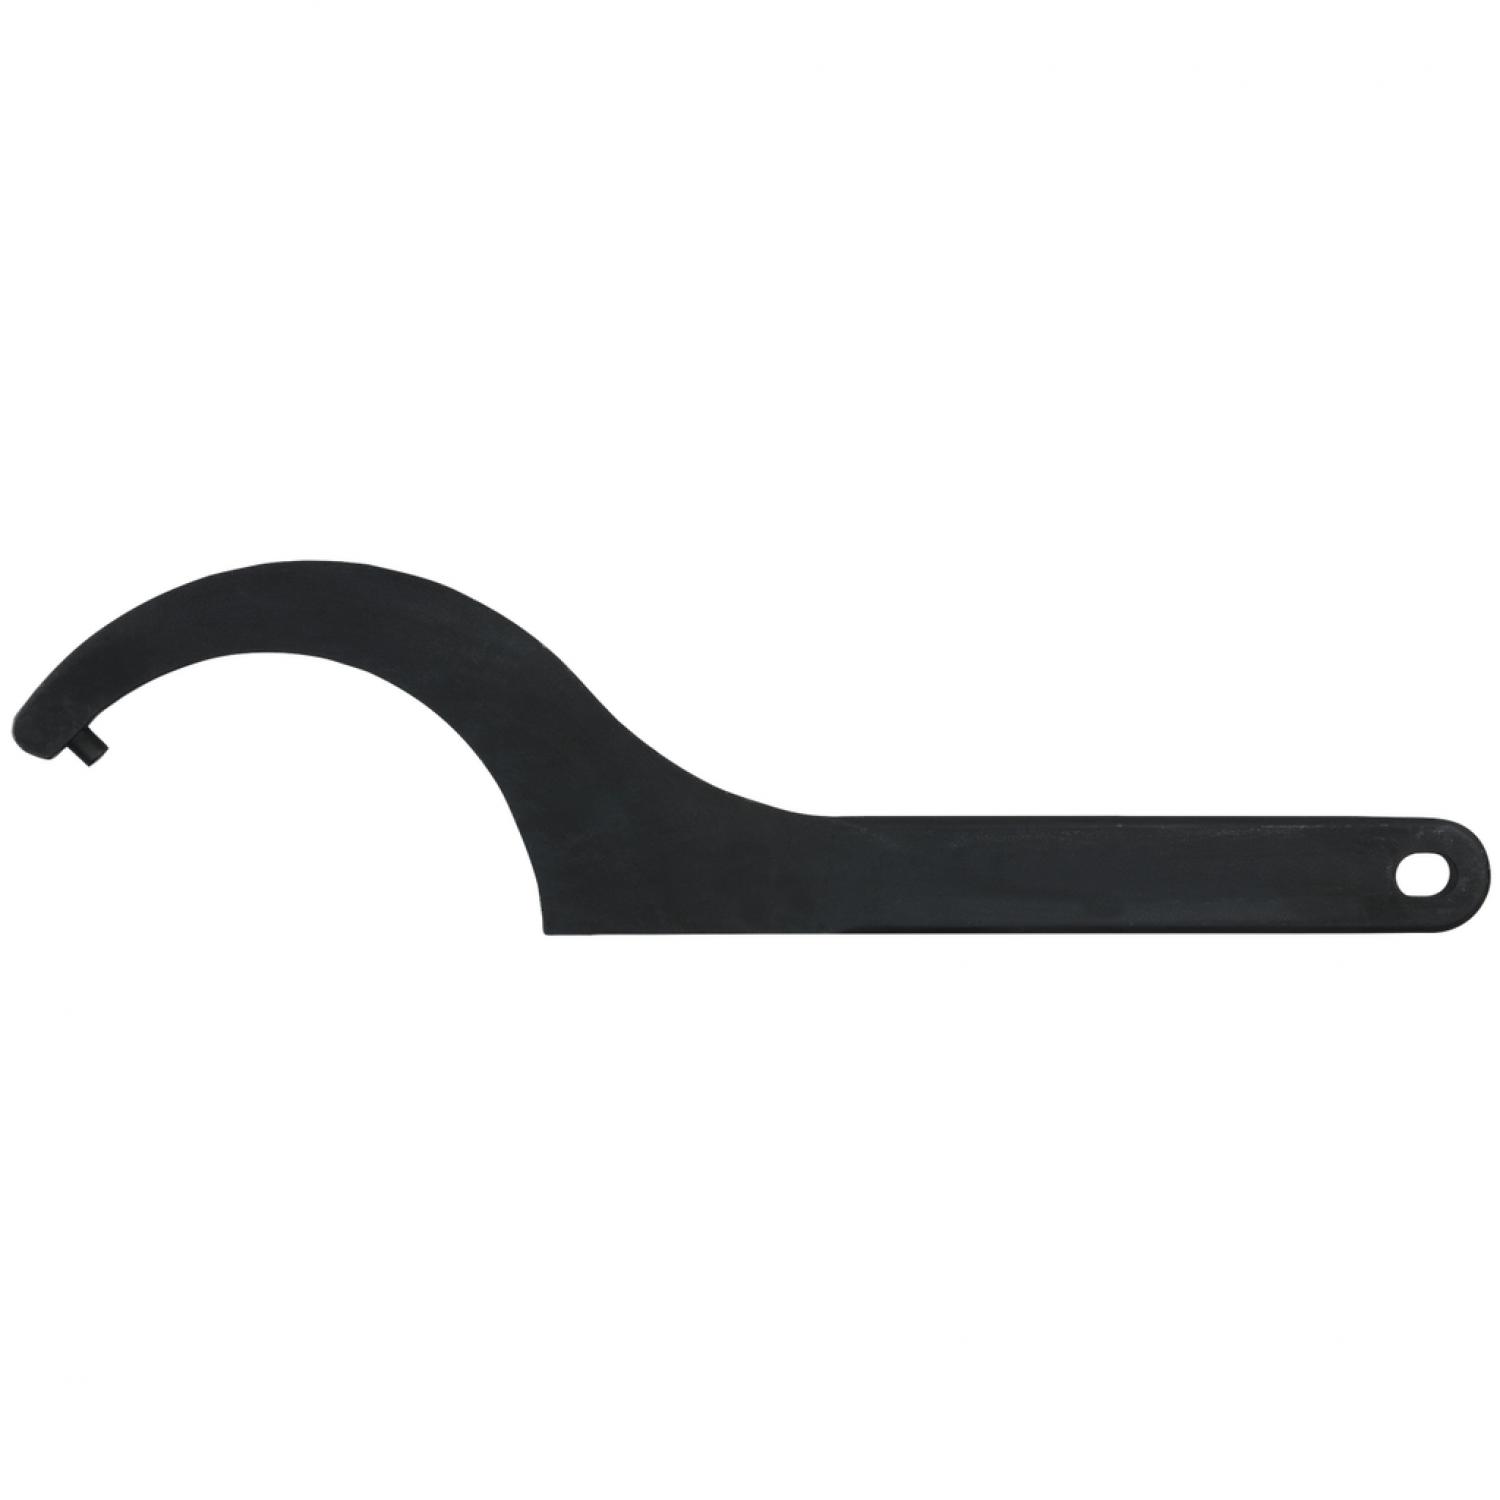 Прочный крючковый ключ с цапфами, 16-18 мм